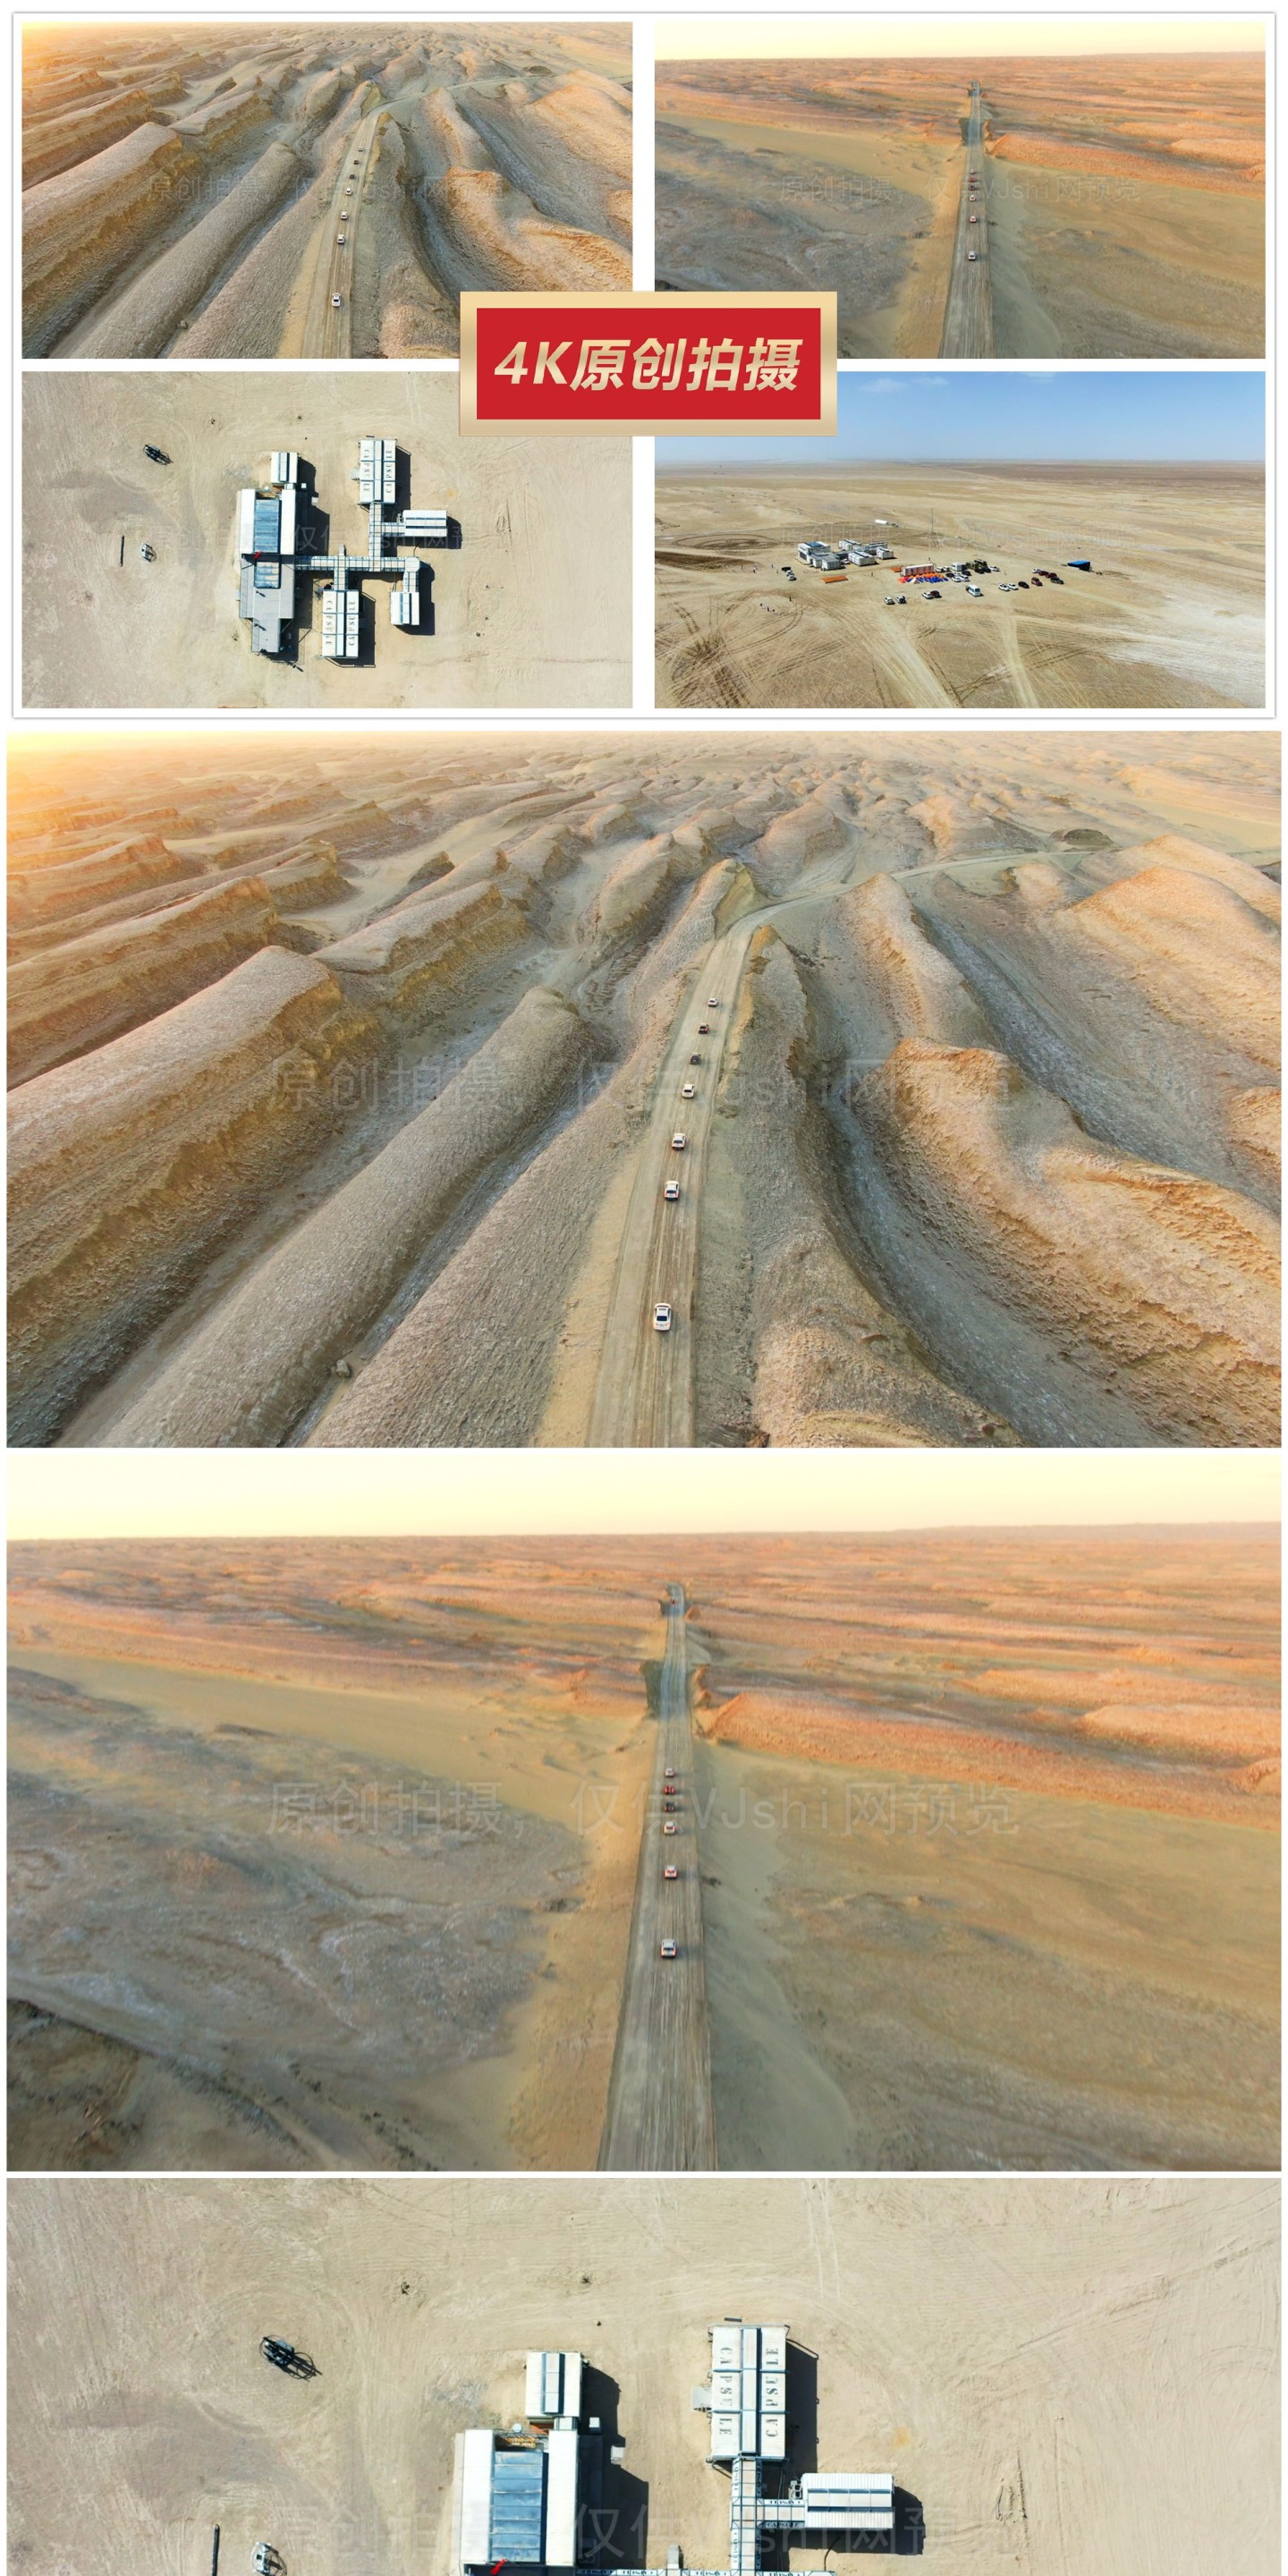 4K航拍俄博梁雅丹的火星营地